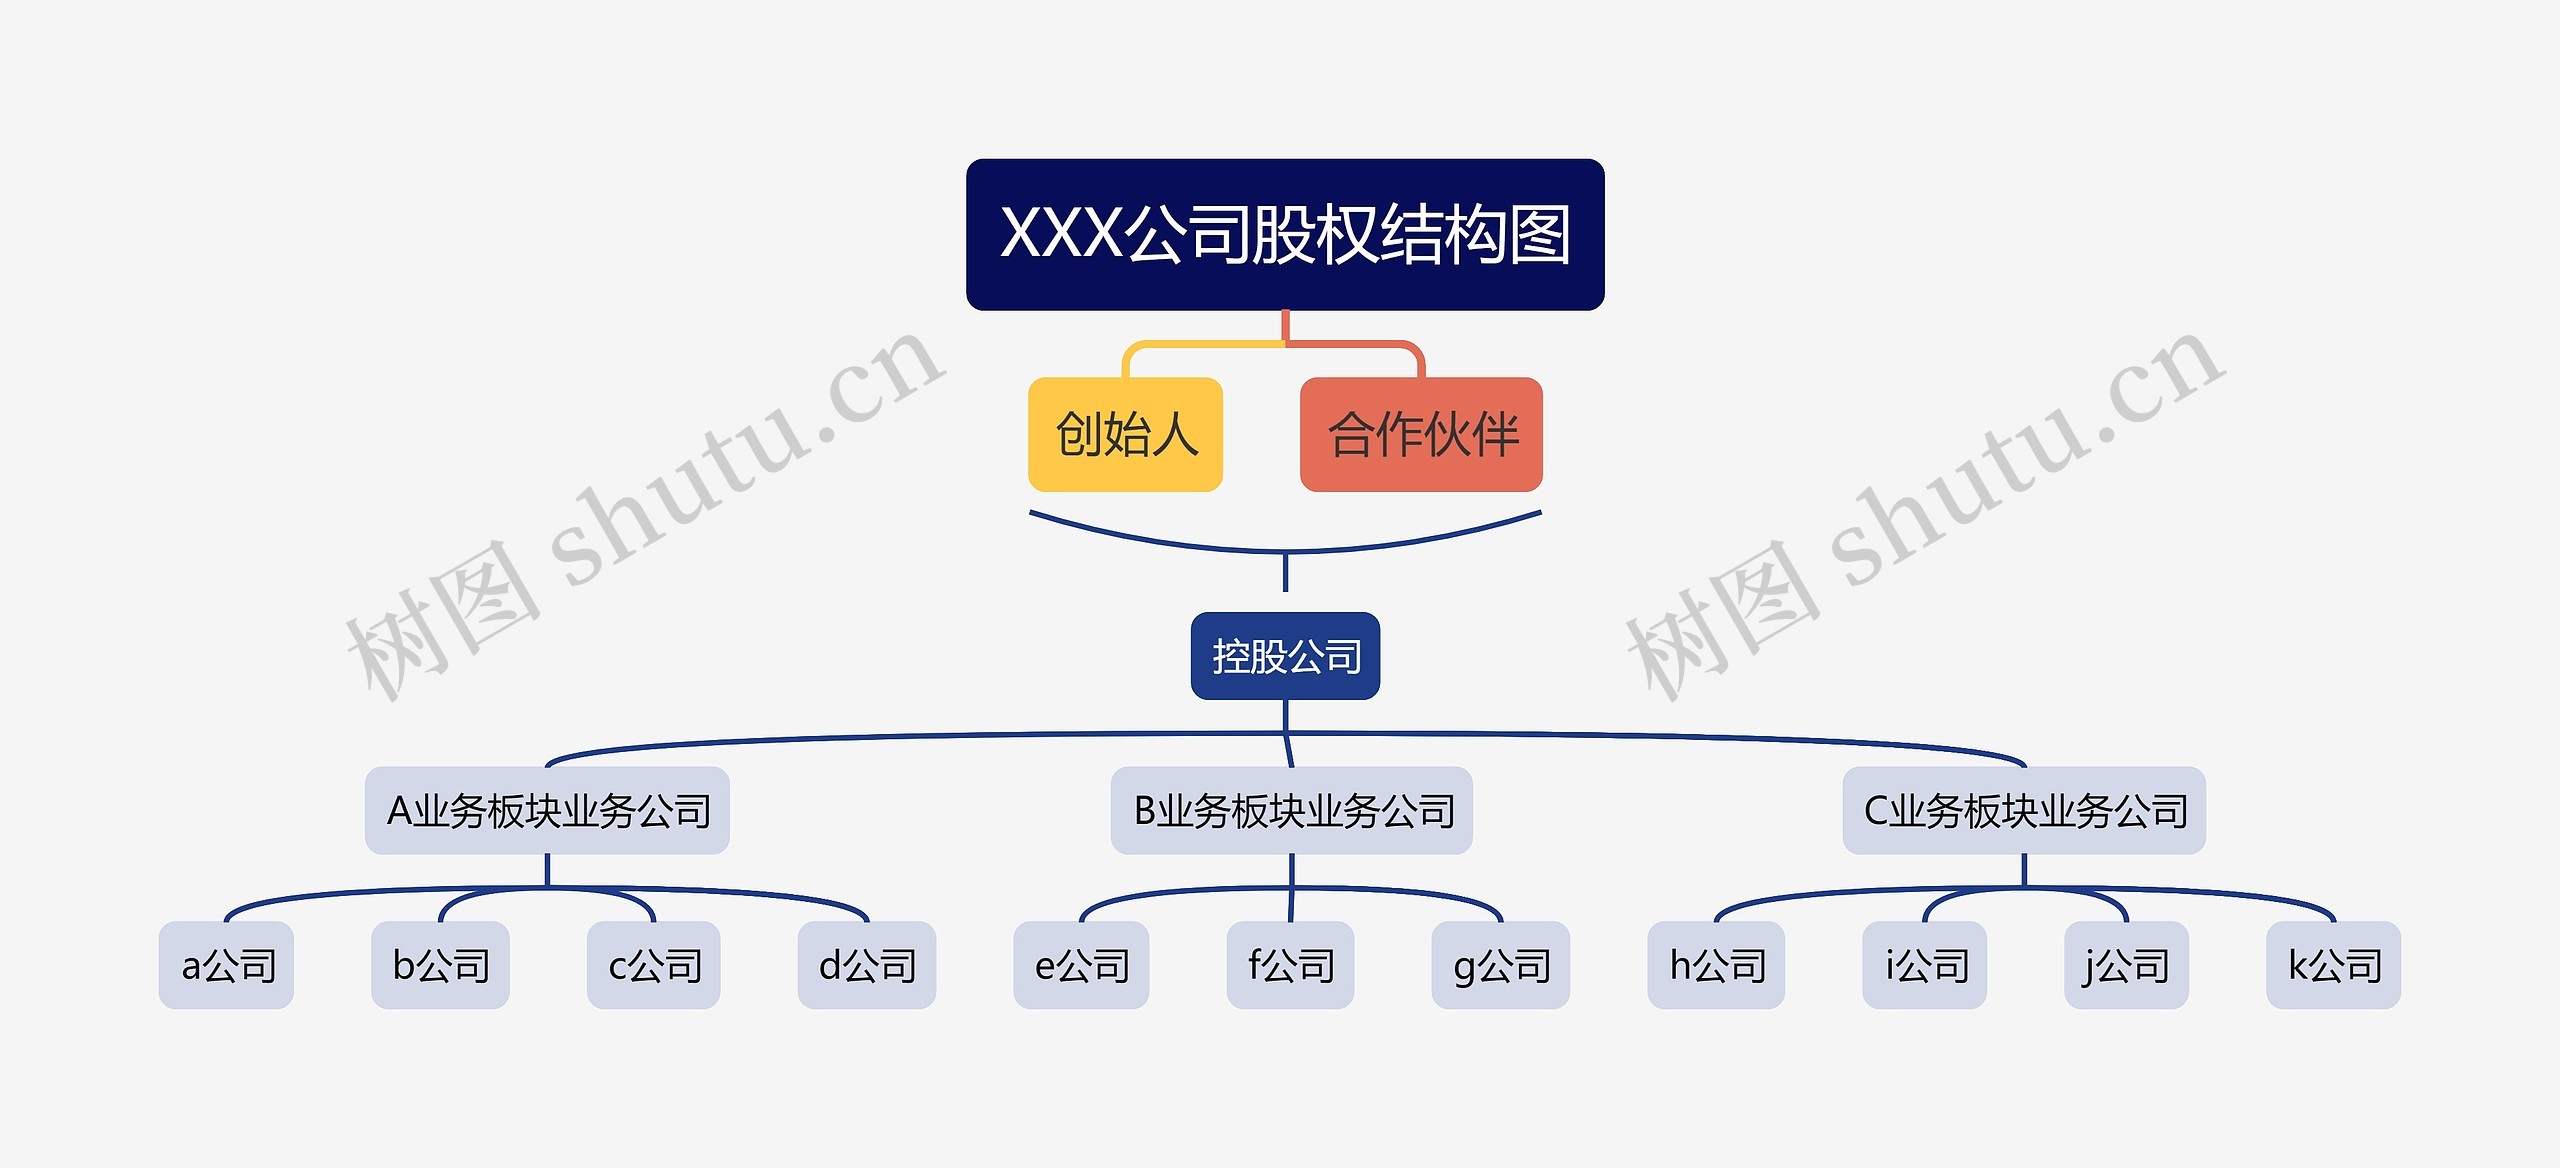 XXX公司股权结构图思维导图